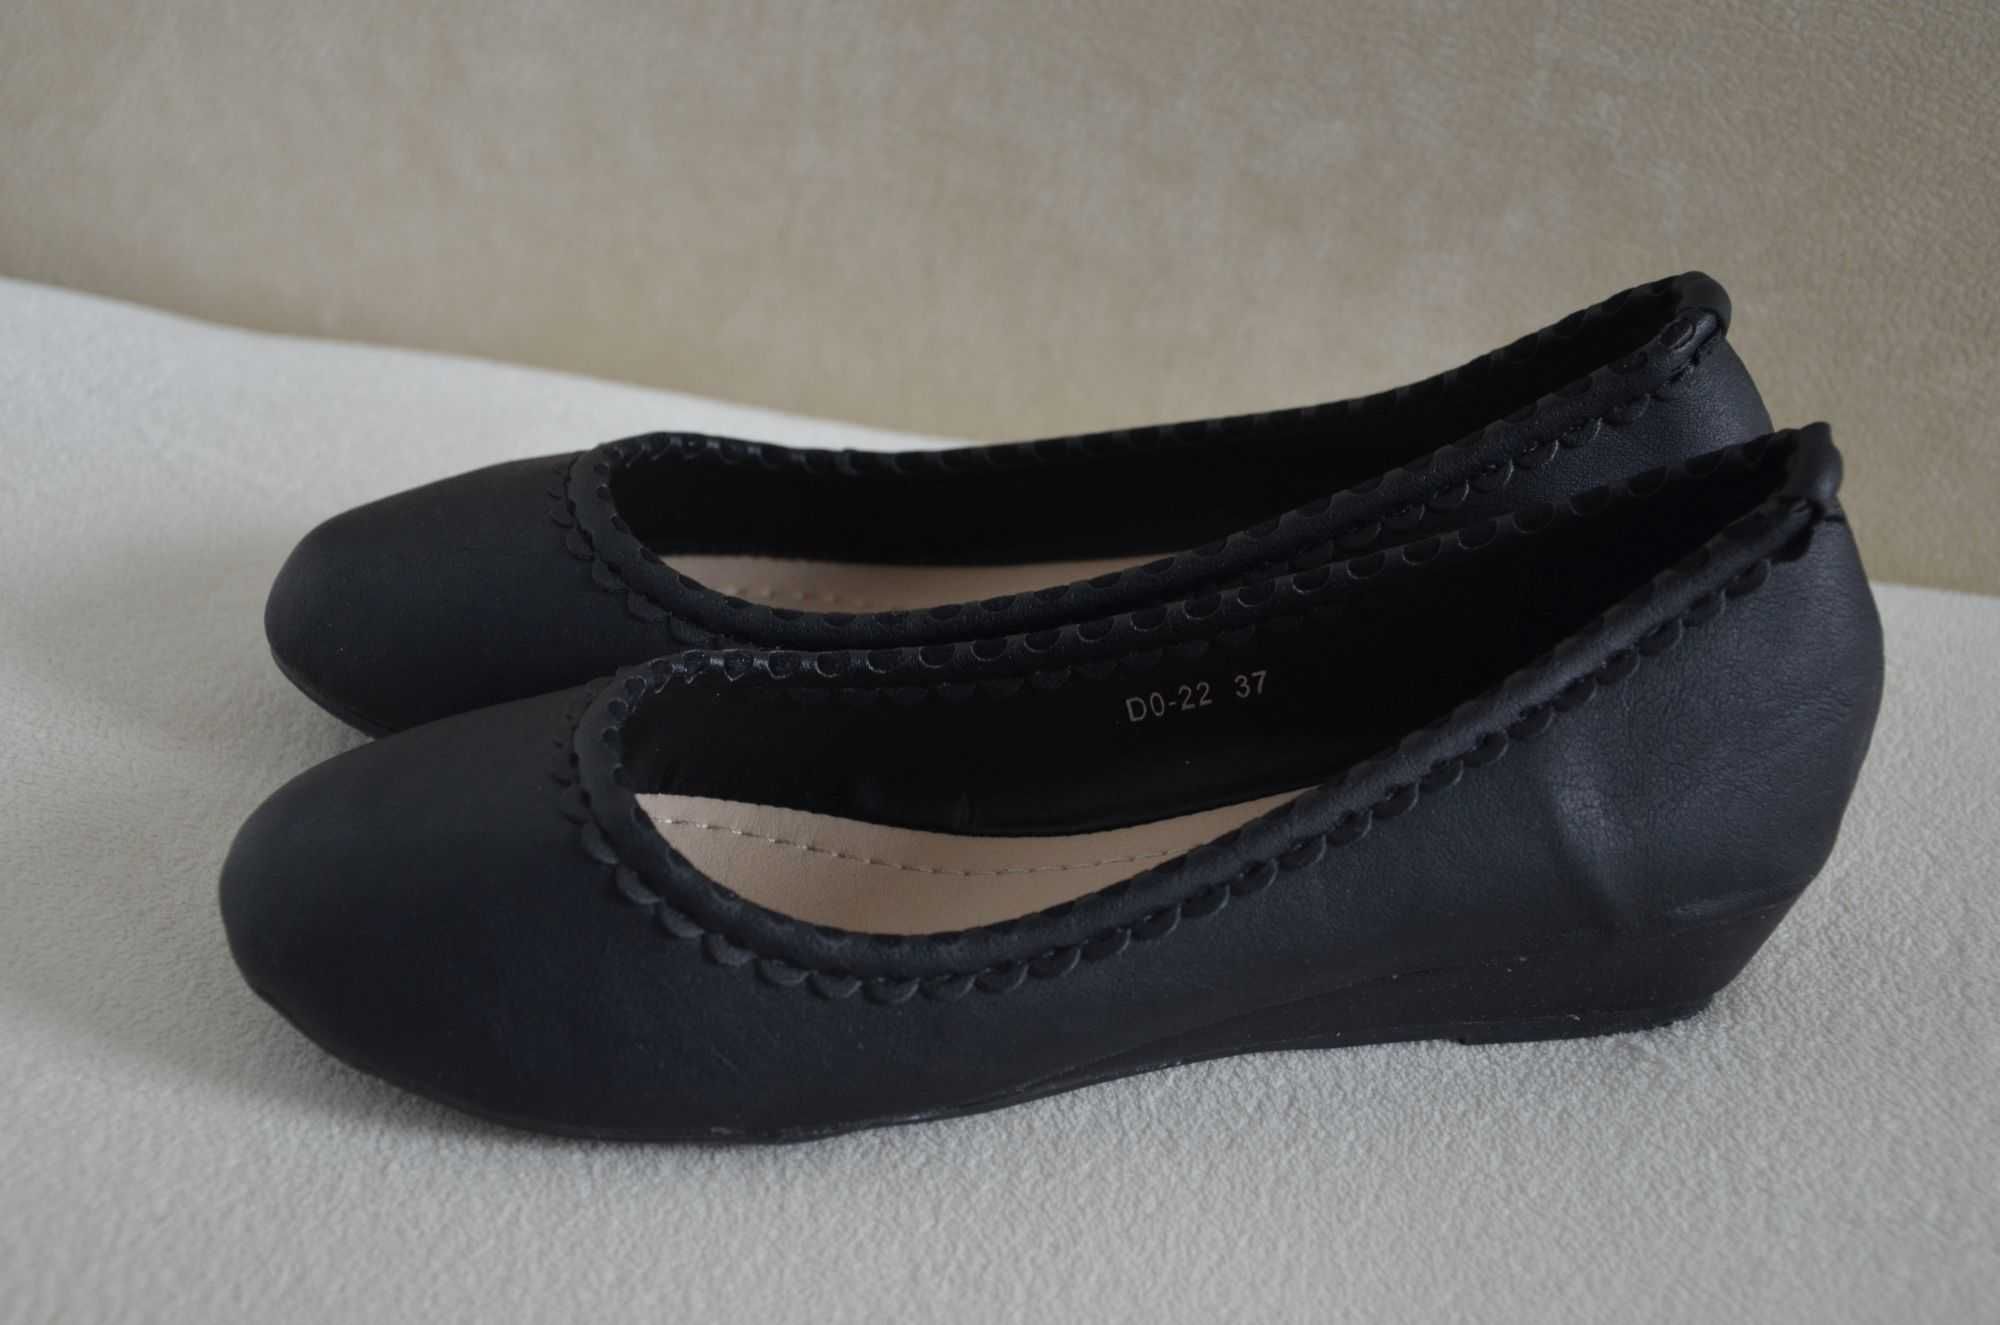 Lucky Shoes nowe buty czółenka półbuty damskie ekoskóra czarne 38 24cm